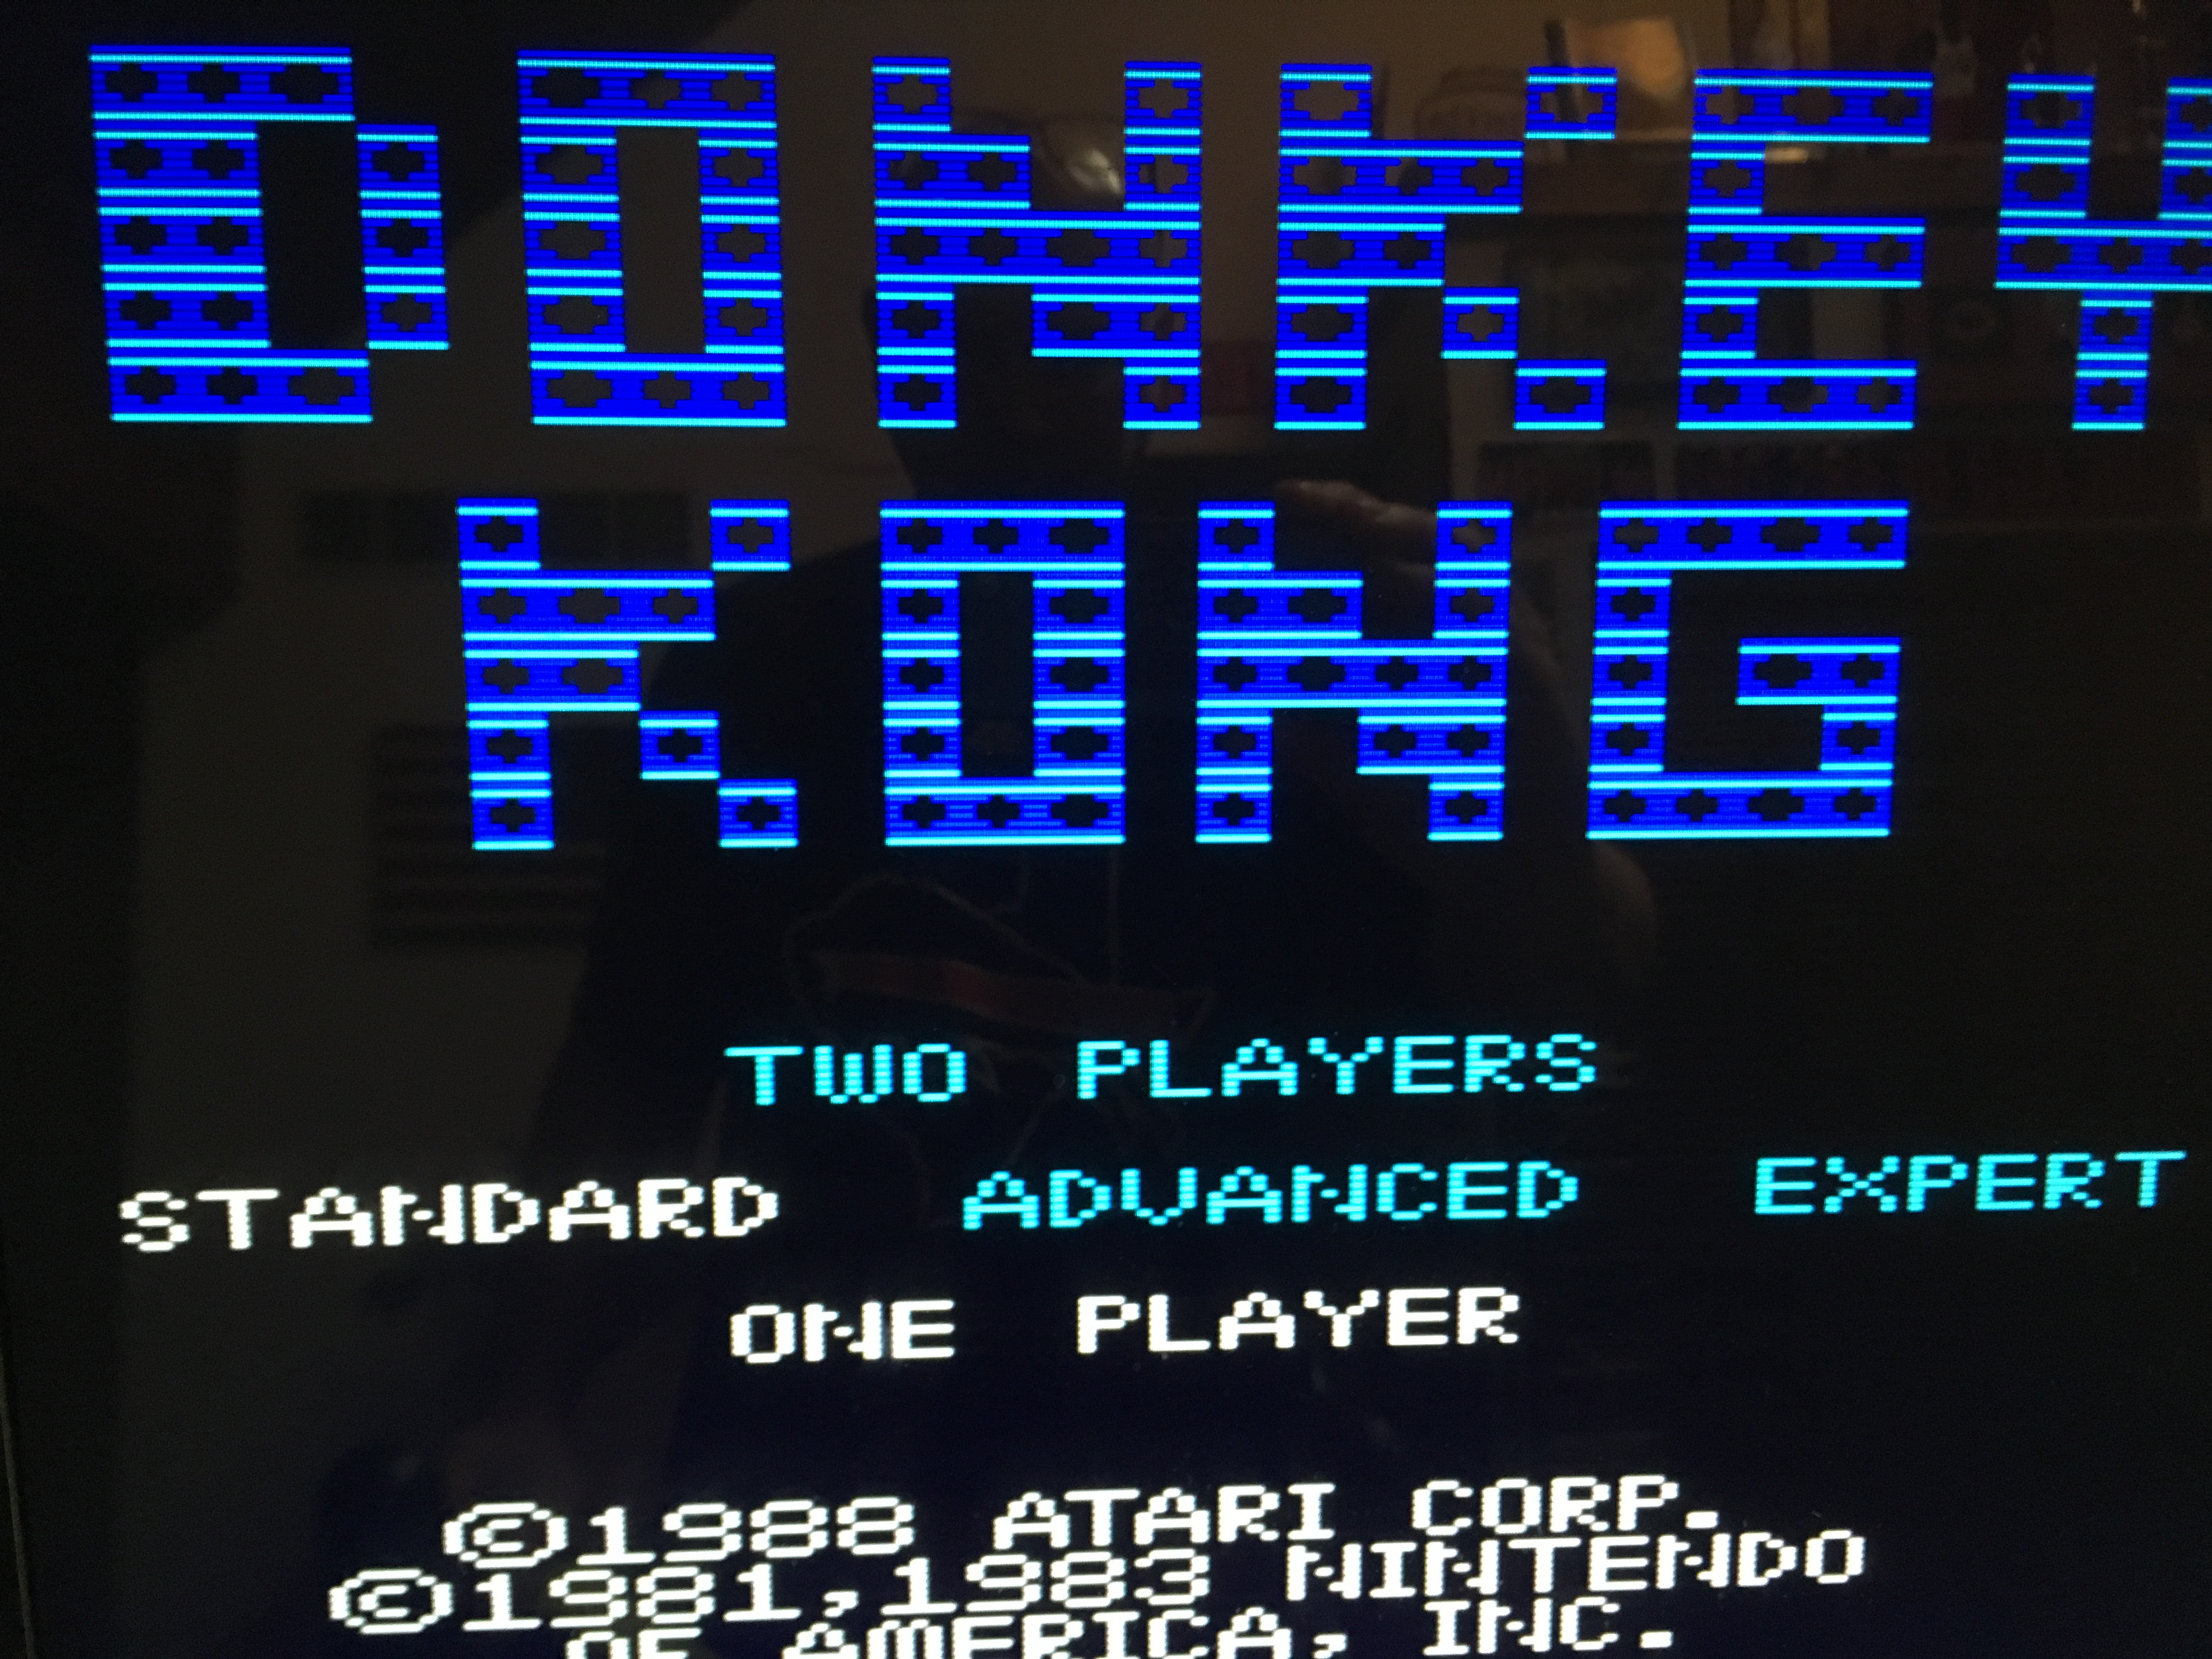 Donkey Kong: Standard 78,900 points